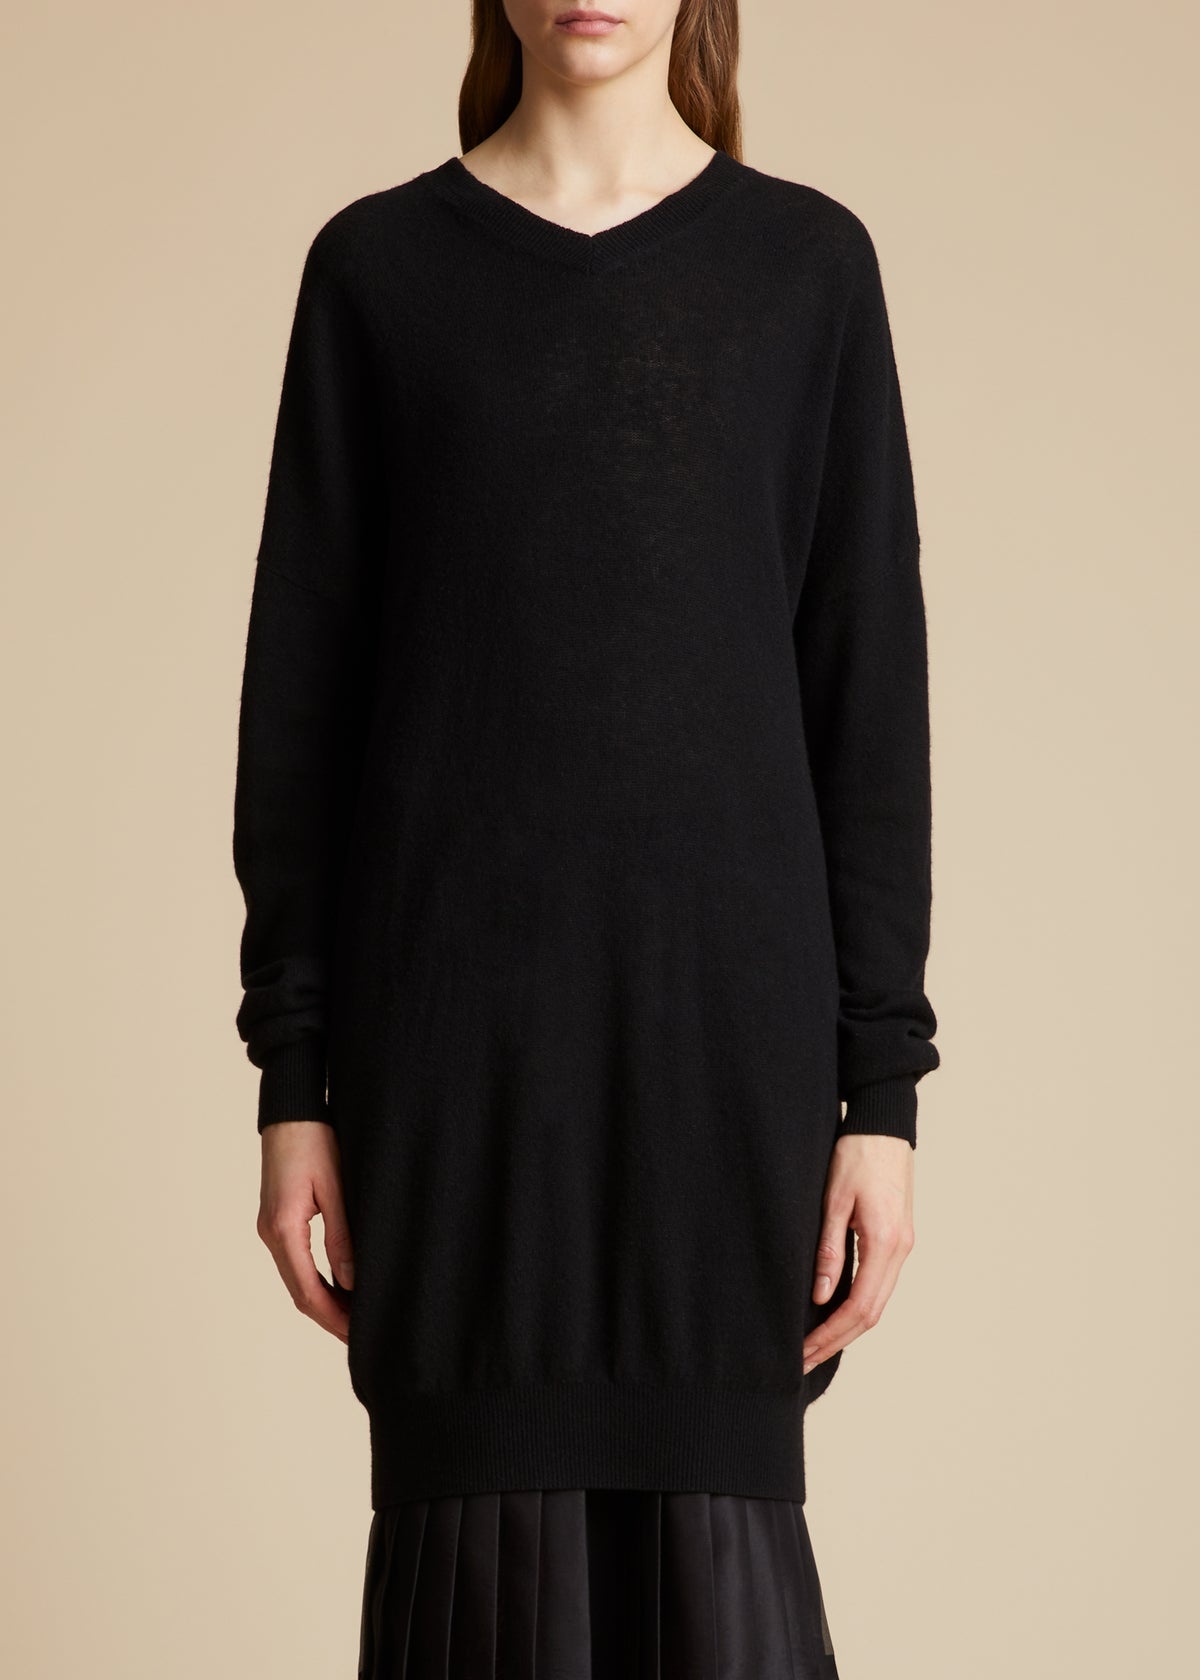 The Marano Sweater in Black - 1